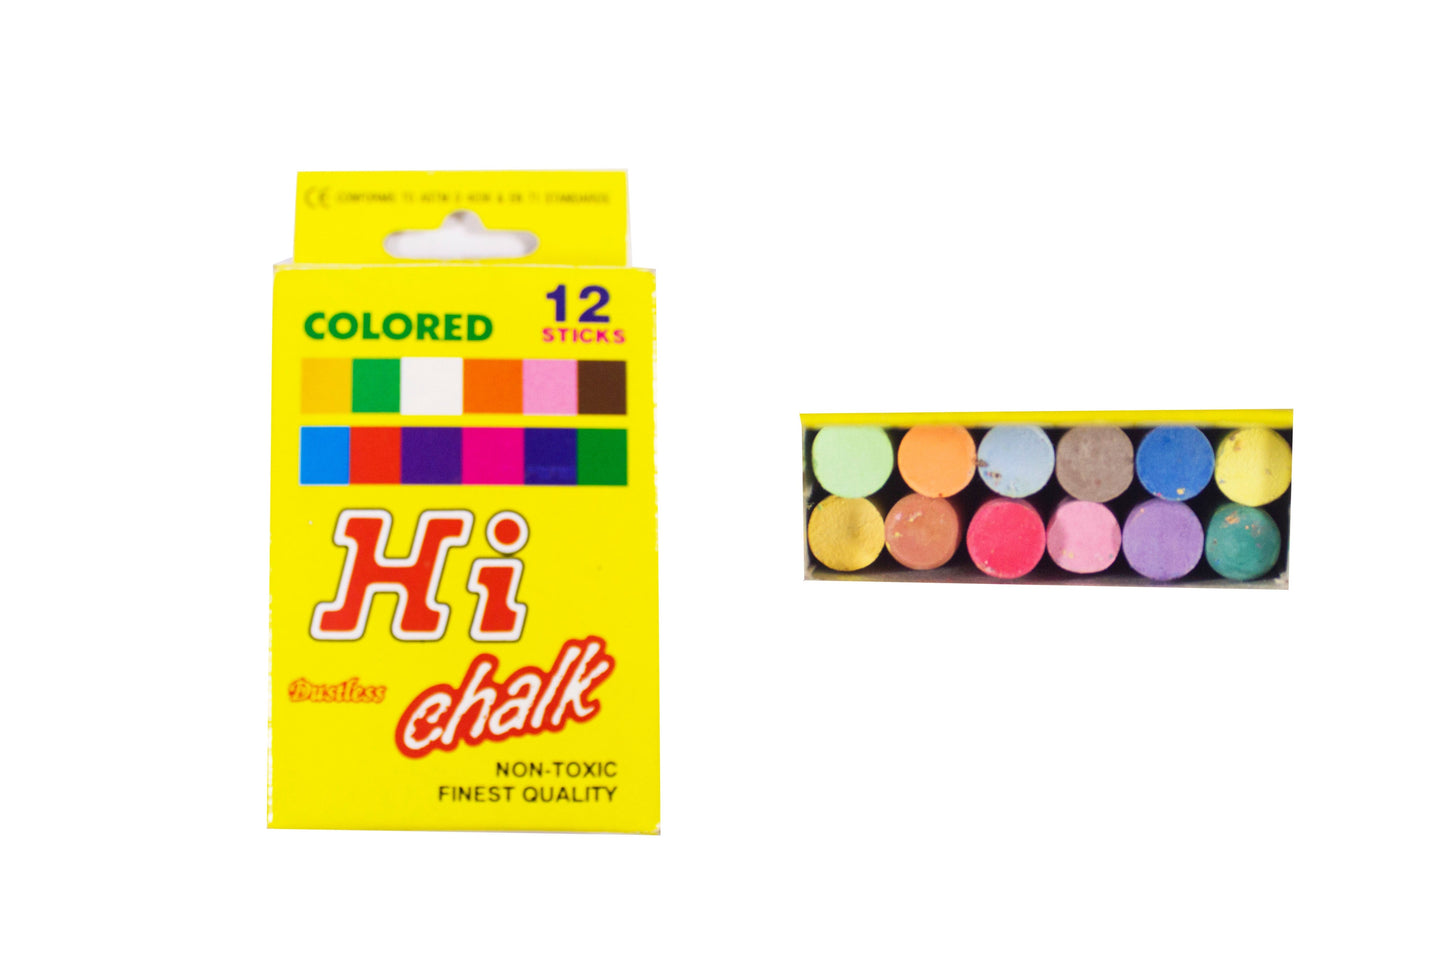 SQI Hi Chalk/Kid Art 12 pcs per box